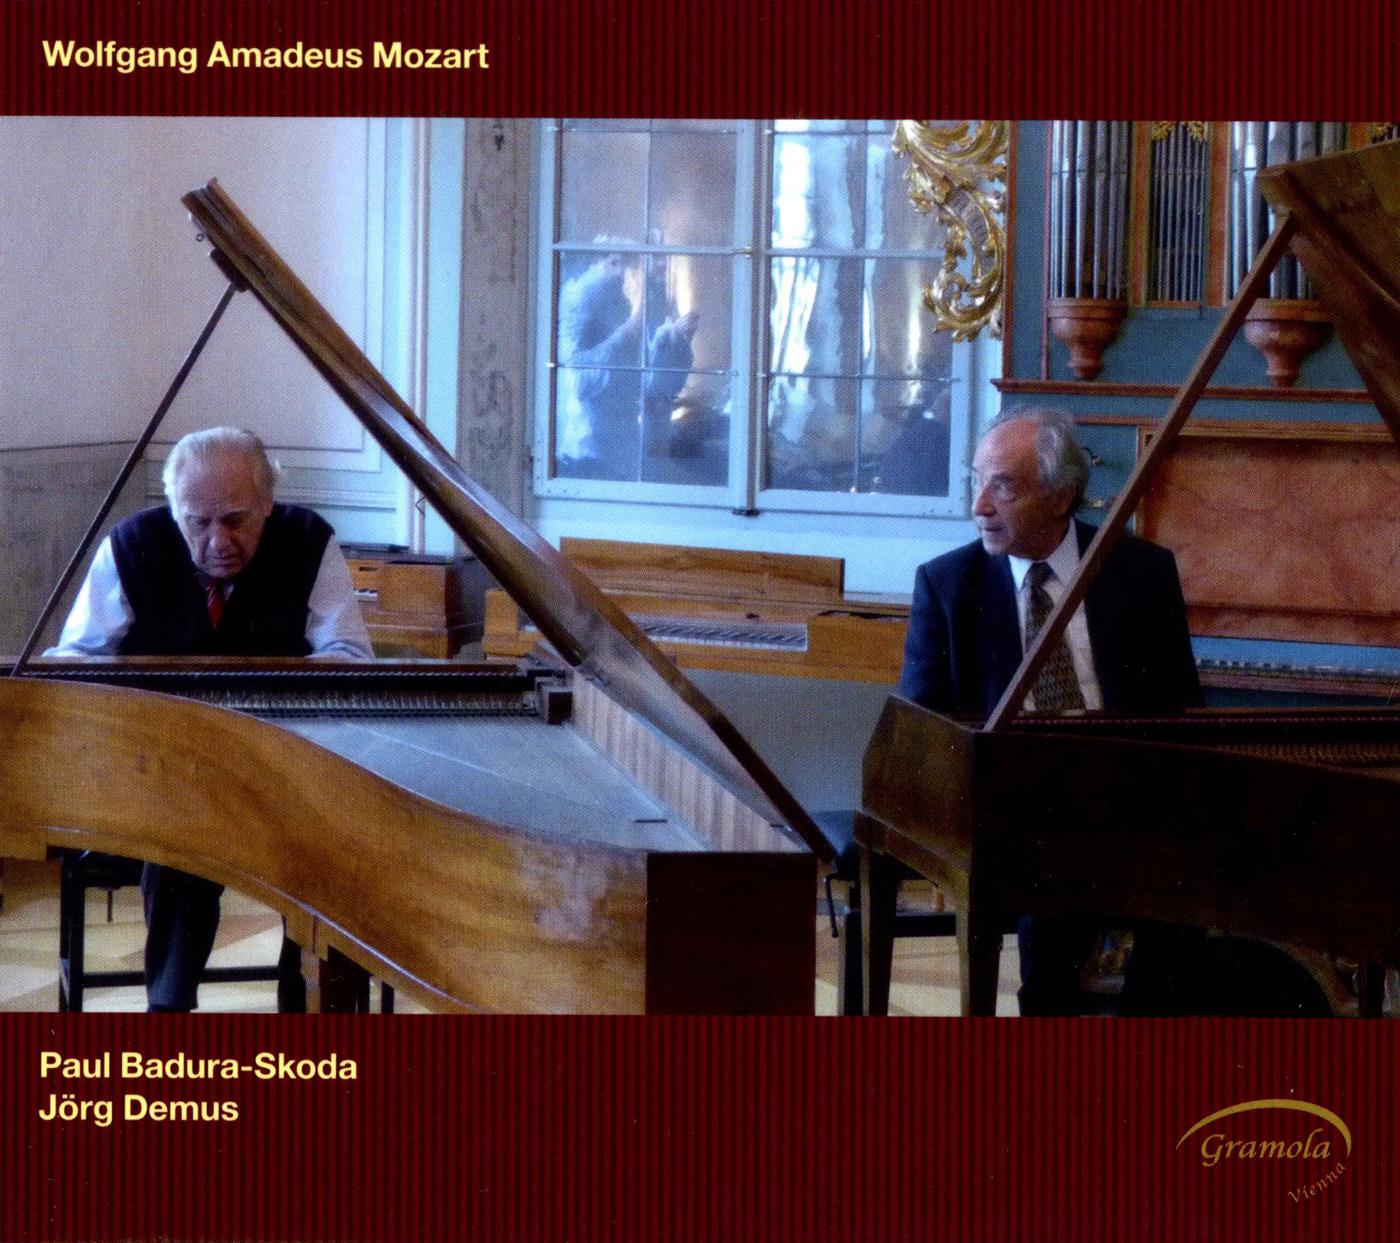 Sonata for 2 Pianos in D Major, K. 448: III. Molto allegro